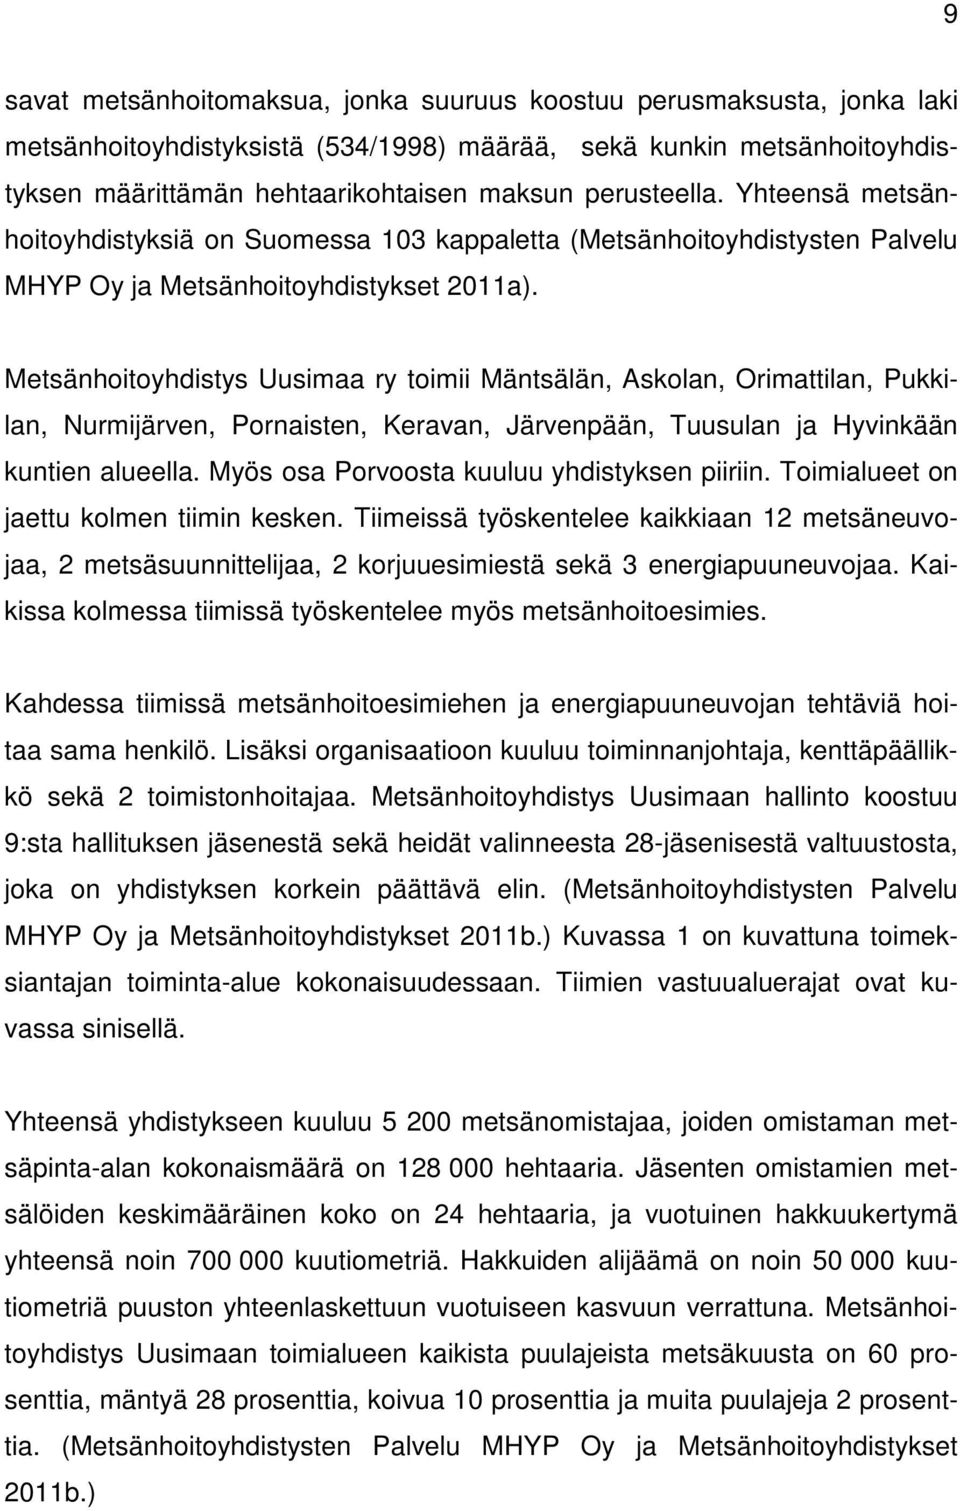 Metsänhoitoyhdistys Uusimaa ry toimii Mäntsälän, Askolan, Orimattilan, Pukkilan, Nurmijärven, Pornaisten, Keravan, Järvenpään, Tuusulan ja Hyvinkään kuntien alueella.